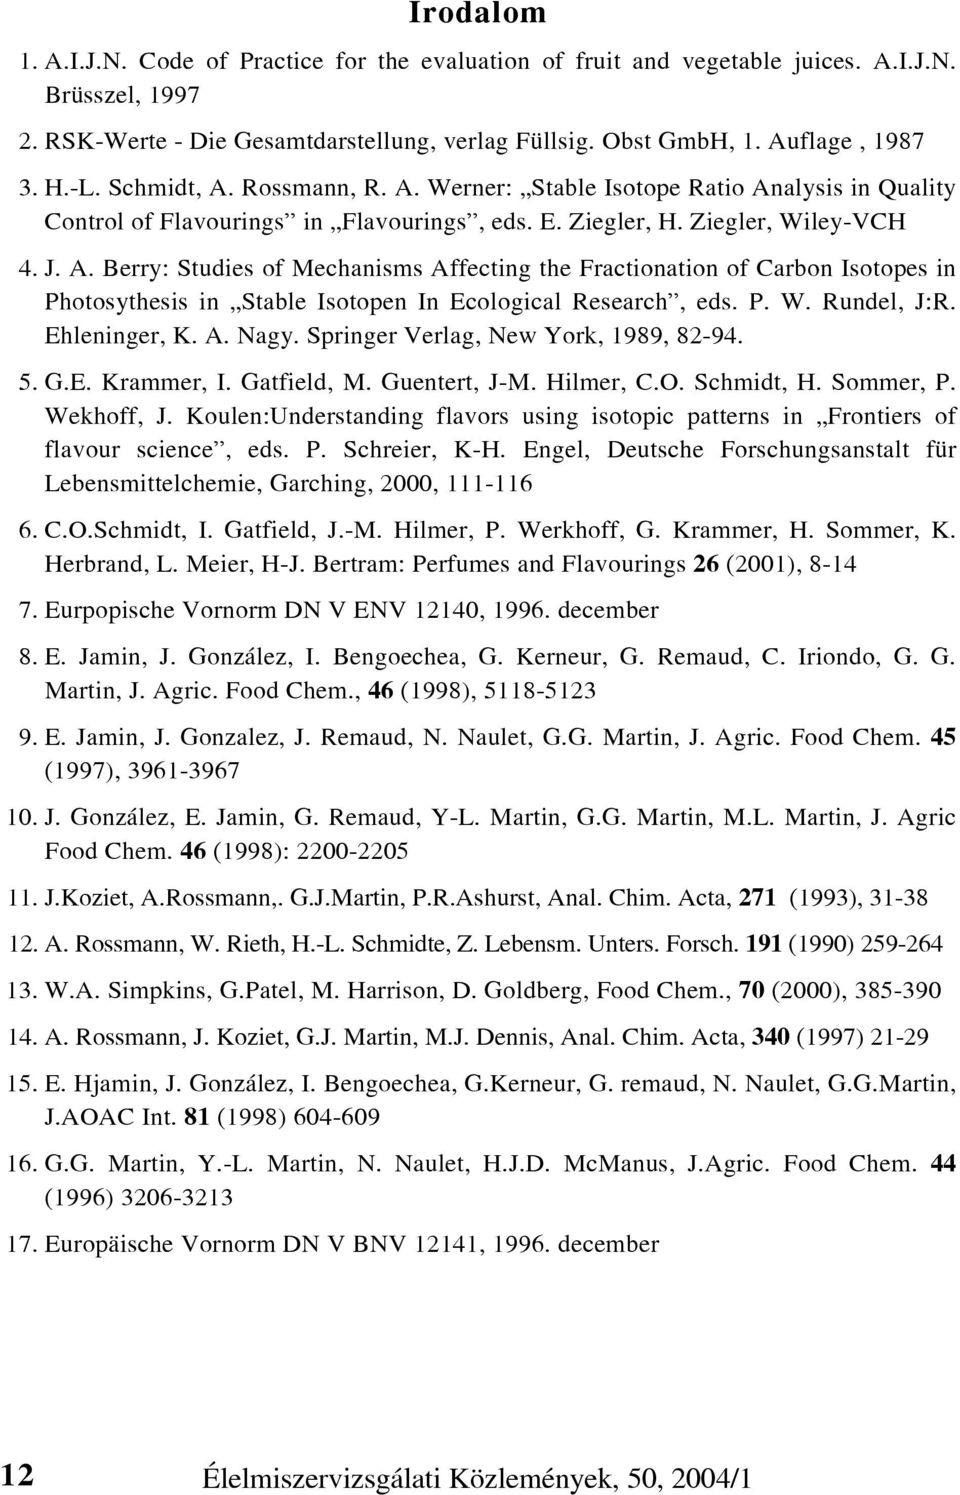 P. W. Rundel, J:R. Ehleninger, K. A. Nagy. Springer Verlag, New York, 1989, 82-94. 5. G.E. Krammer, I. Gatfield, M. Guentert, J-M. Hilmer, C.O. Schmidt, H. Sommer, P. Wekhoff, J.